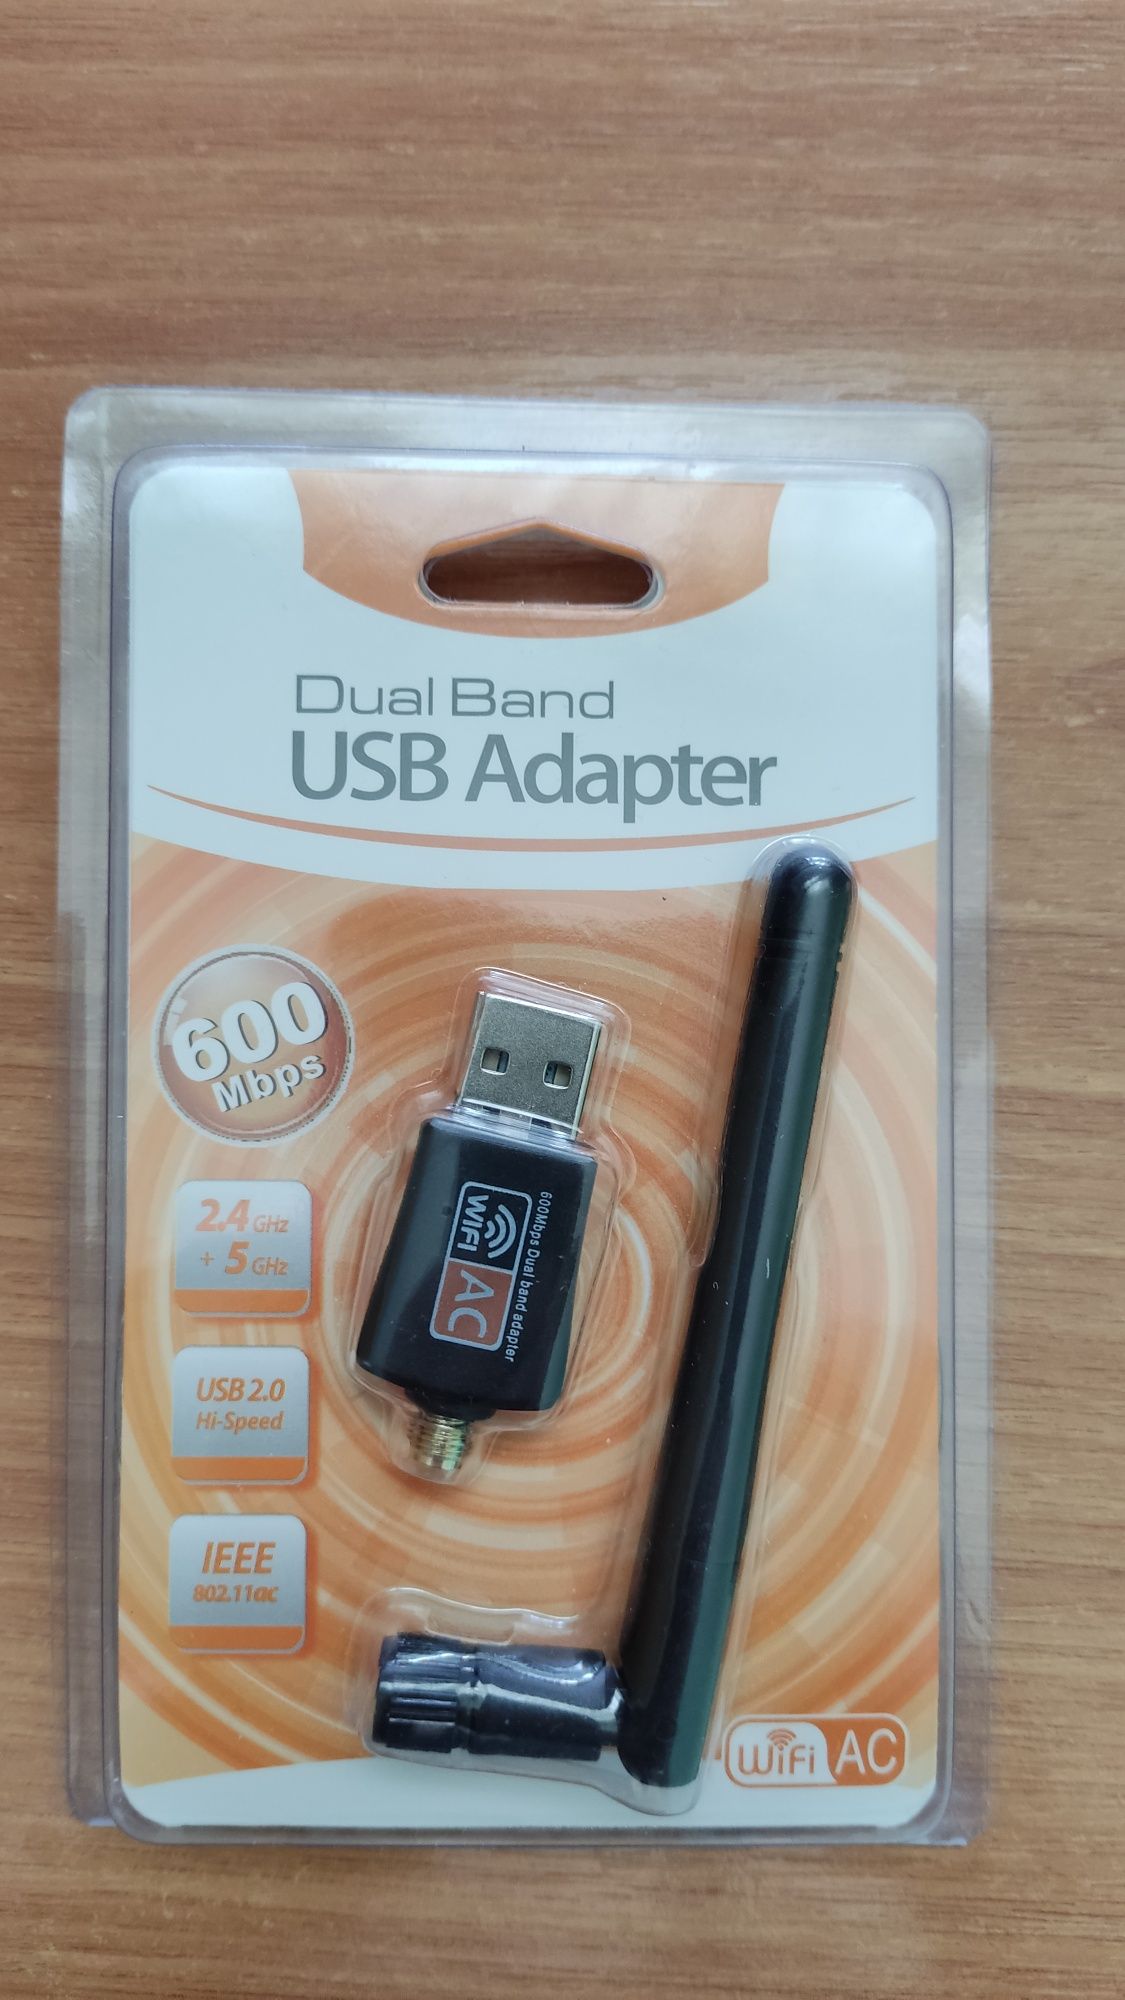 USB Wi-Fi адаптер 2.4GHz та 5 GHz